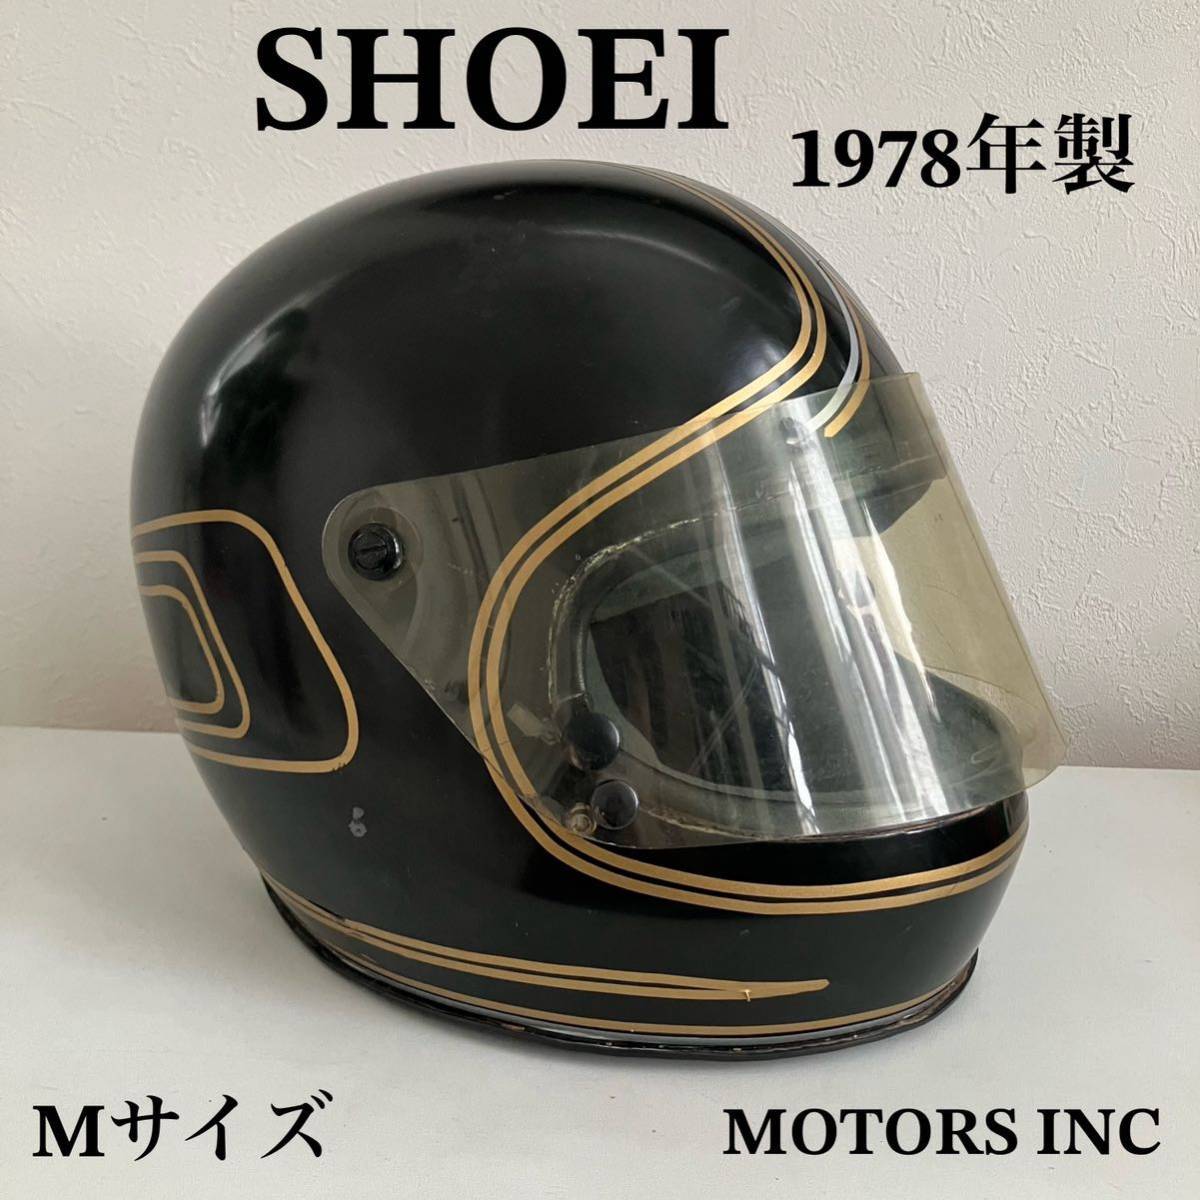 SHOEI* винтажный шлем M размер 1978 год производства группа ад Honda full-face старый машина чёрный Harley редкий подлинная вещь Shoei мотоцикл золотой защита 